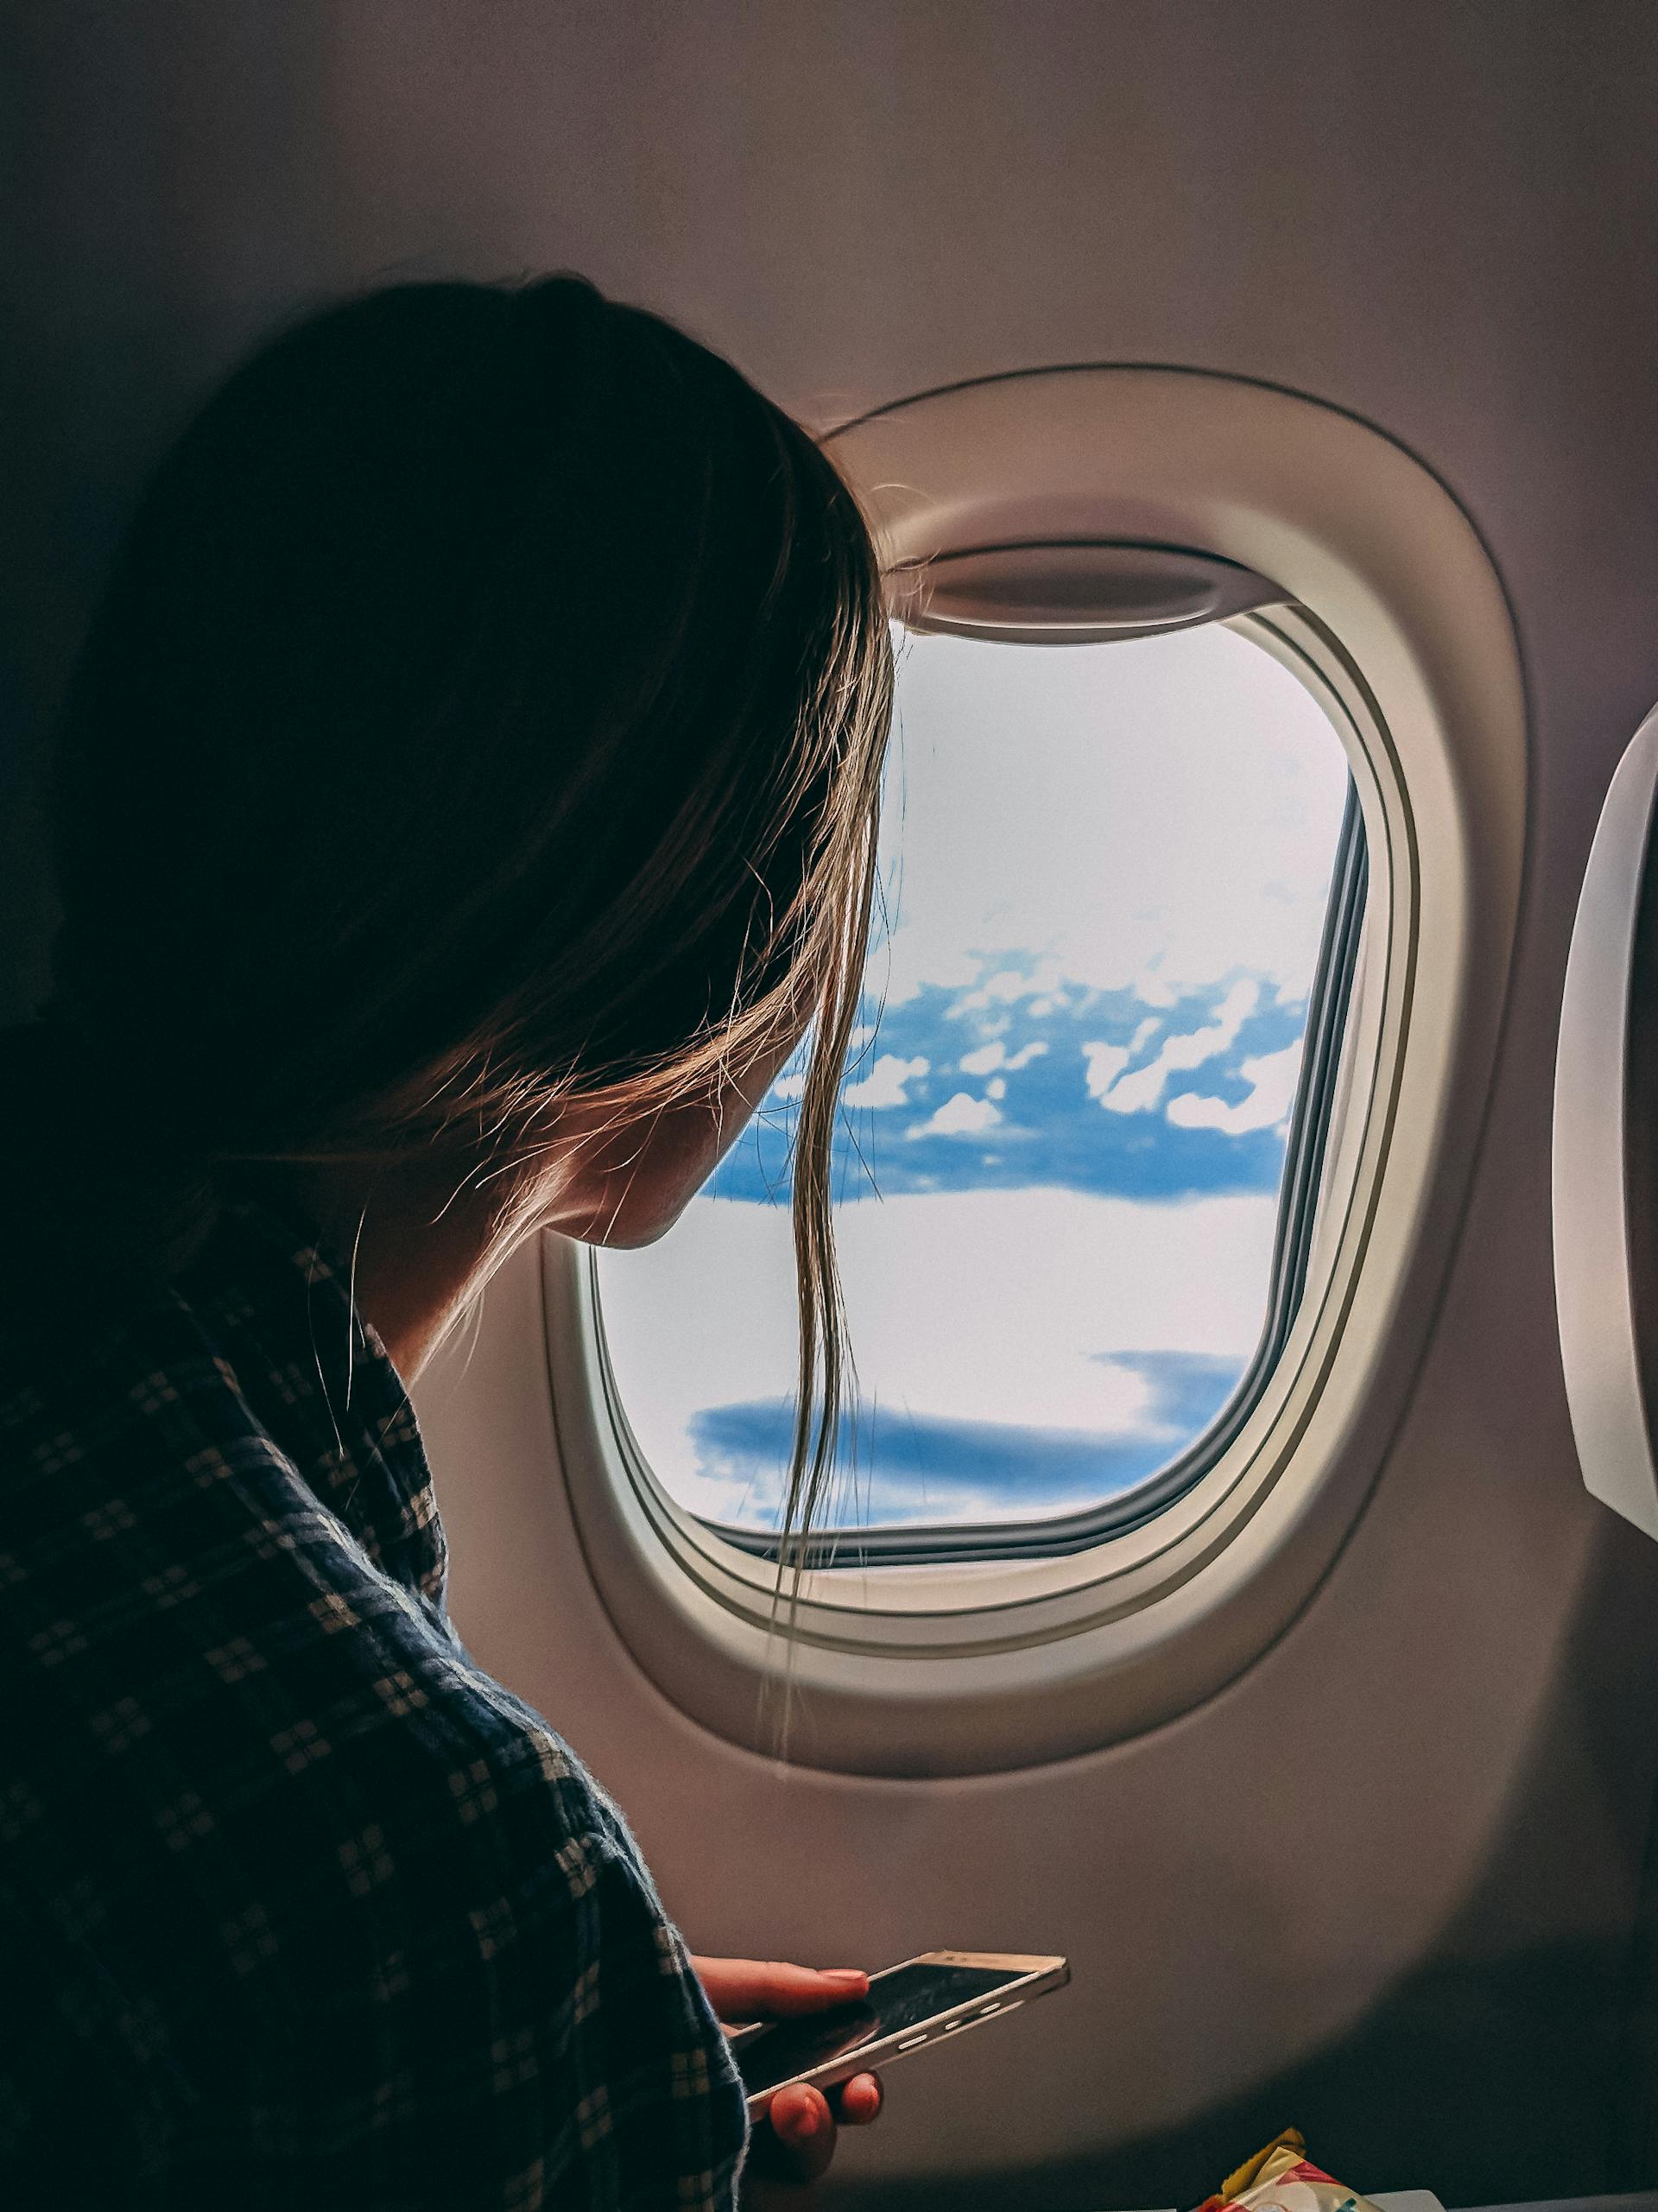 Eine Frau hält ihr Smartphone in der Hand, während sie in einem Flugzeug sitzt | Quelle: Pexels